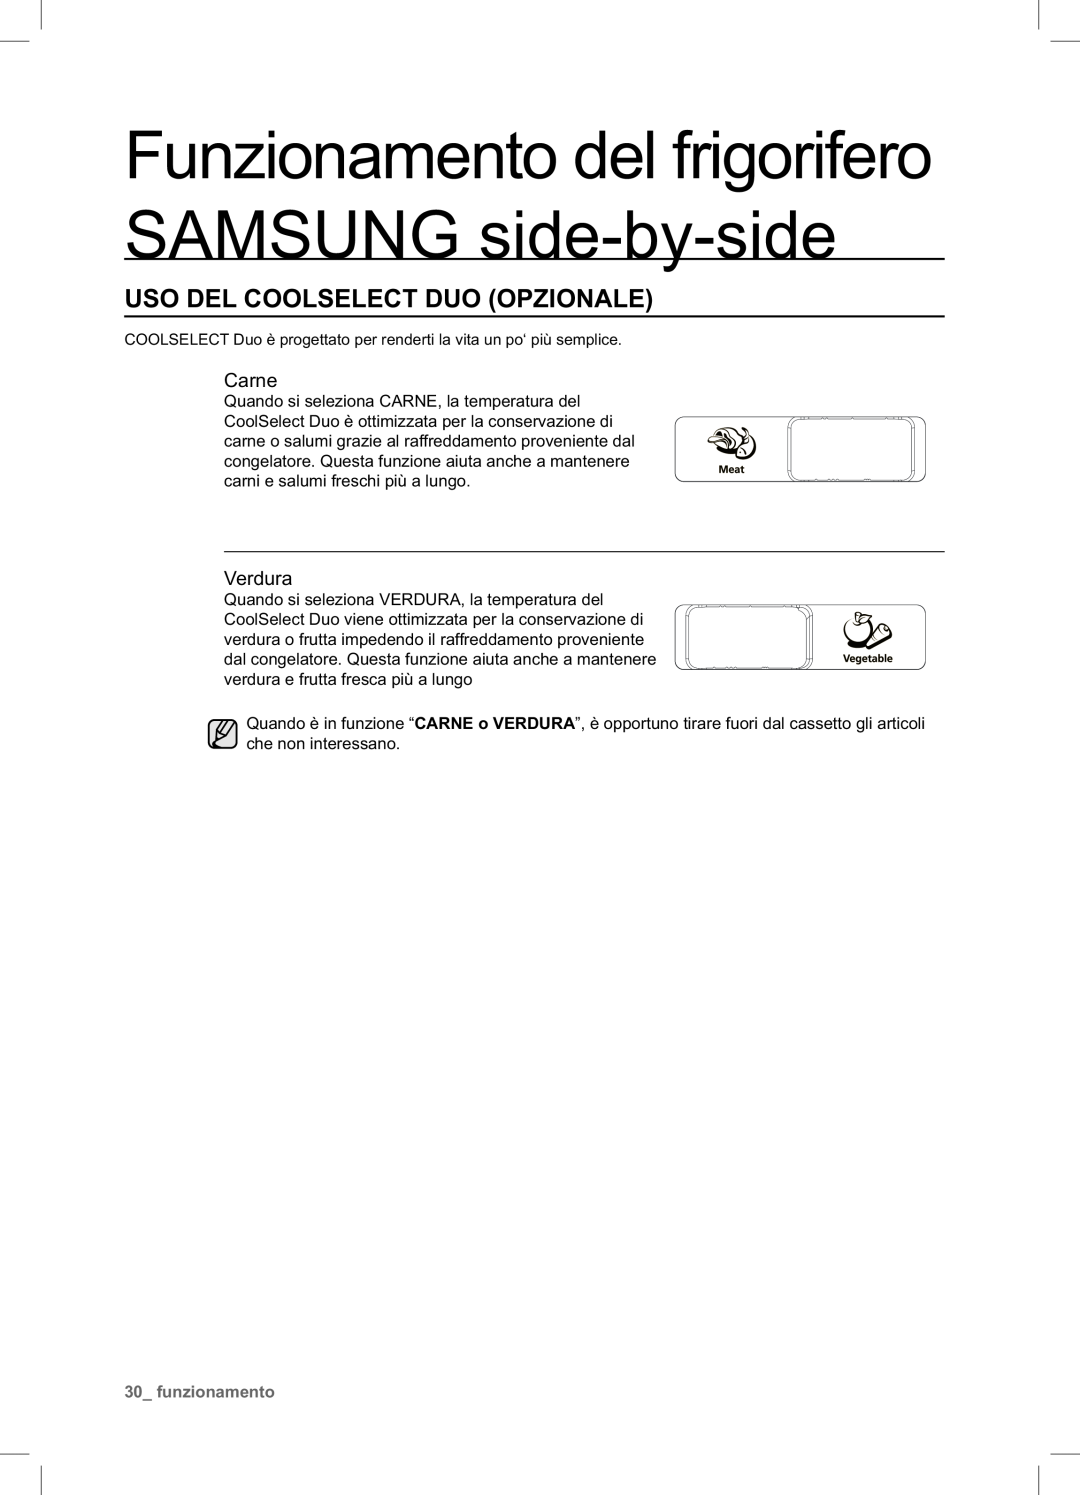 Samsung RSA1NTPE1/XES Uso Del Coolselect Duo Opzionale, Funzionamento del frigorifero SAMSUNG side-by-side, Carne, Verdura 